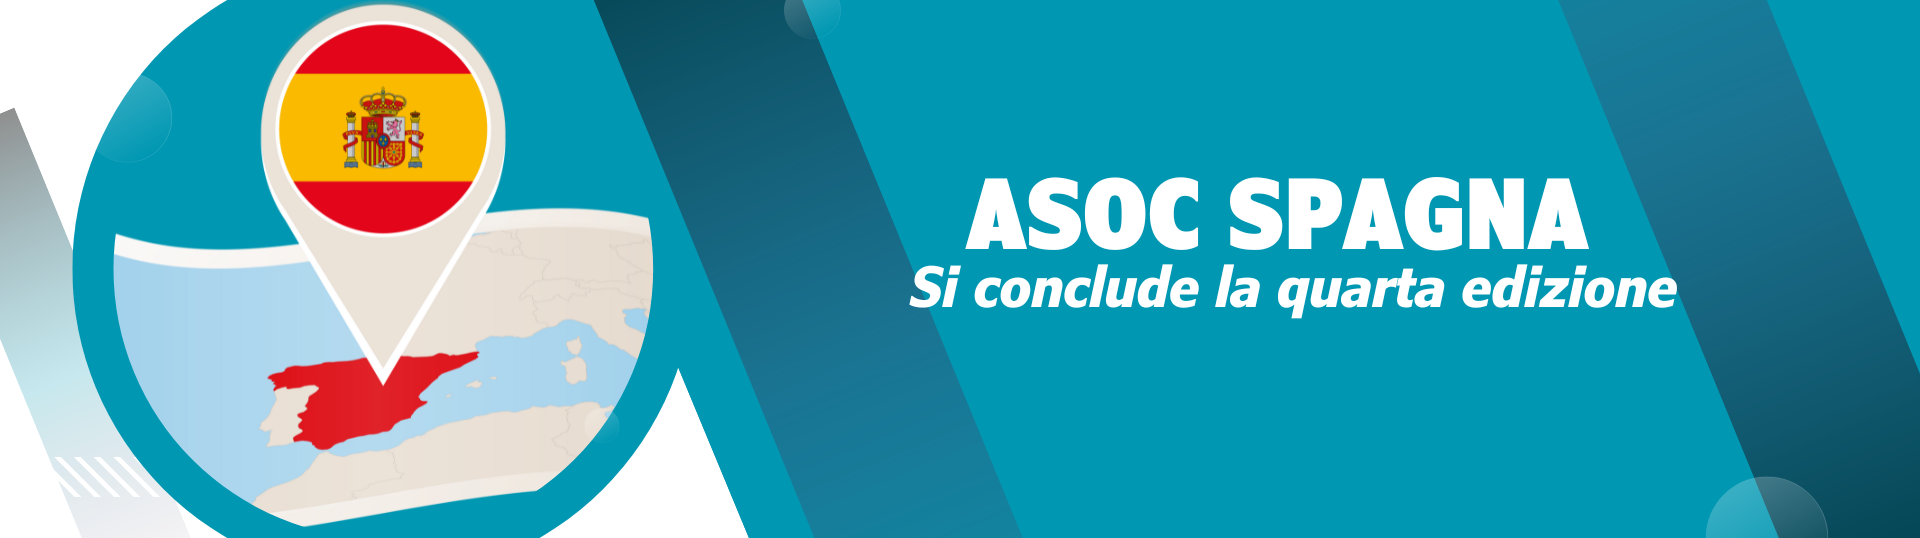 ASOC Spagna: si conclude con successo la quarta edizione